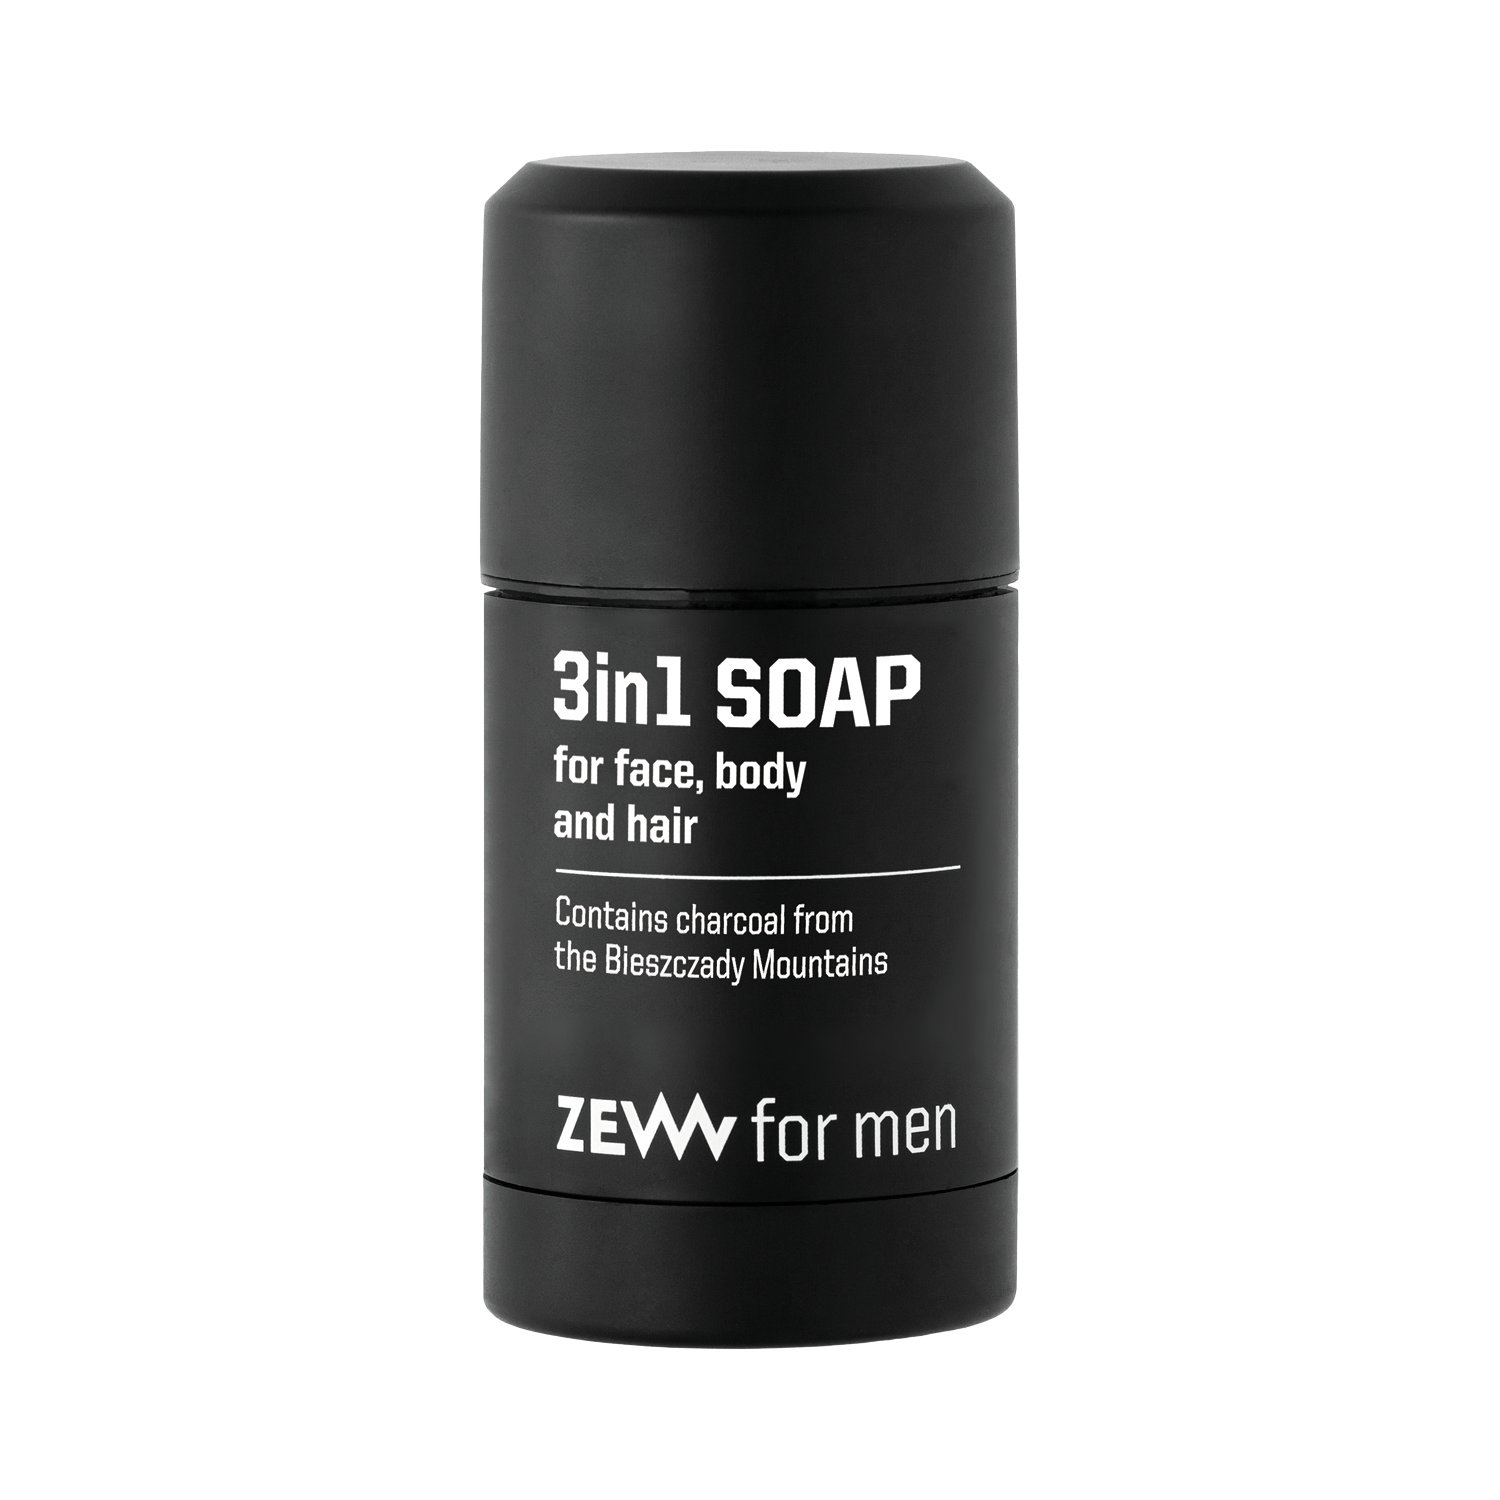 ZEW for men - 3in1 Soap - Seifenstick mit Aktivkohle für Gesicht, Körper und Haar